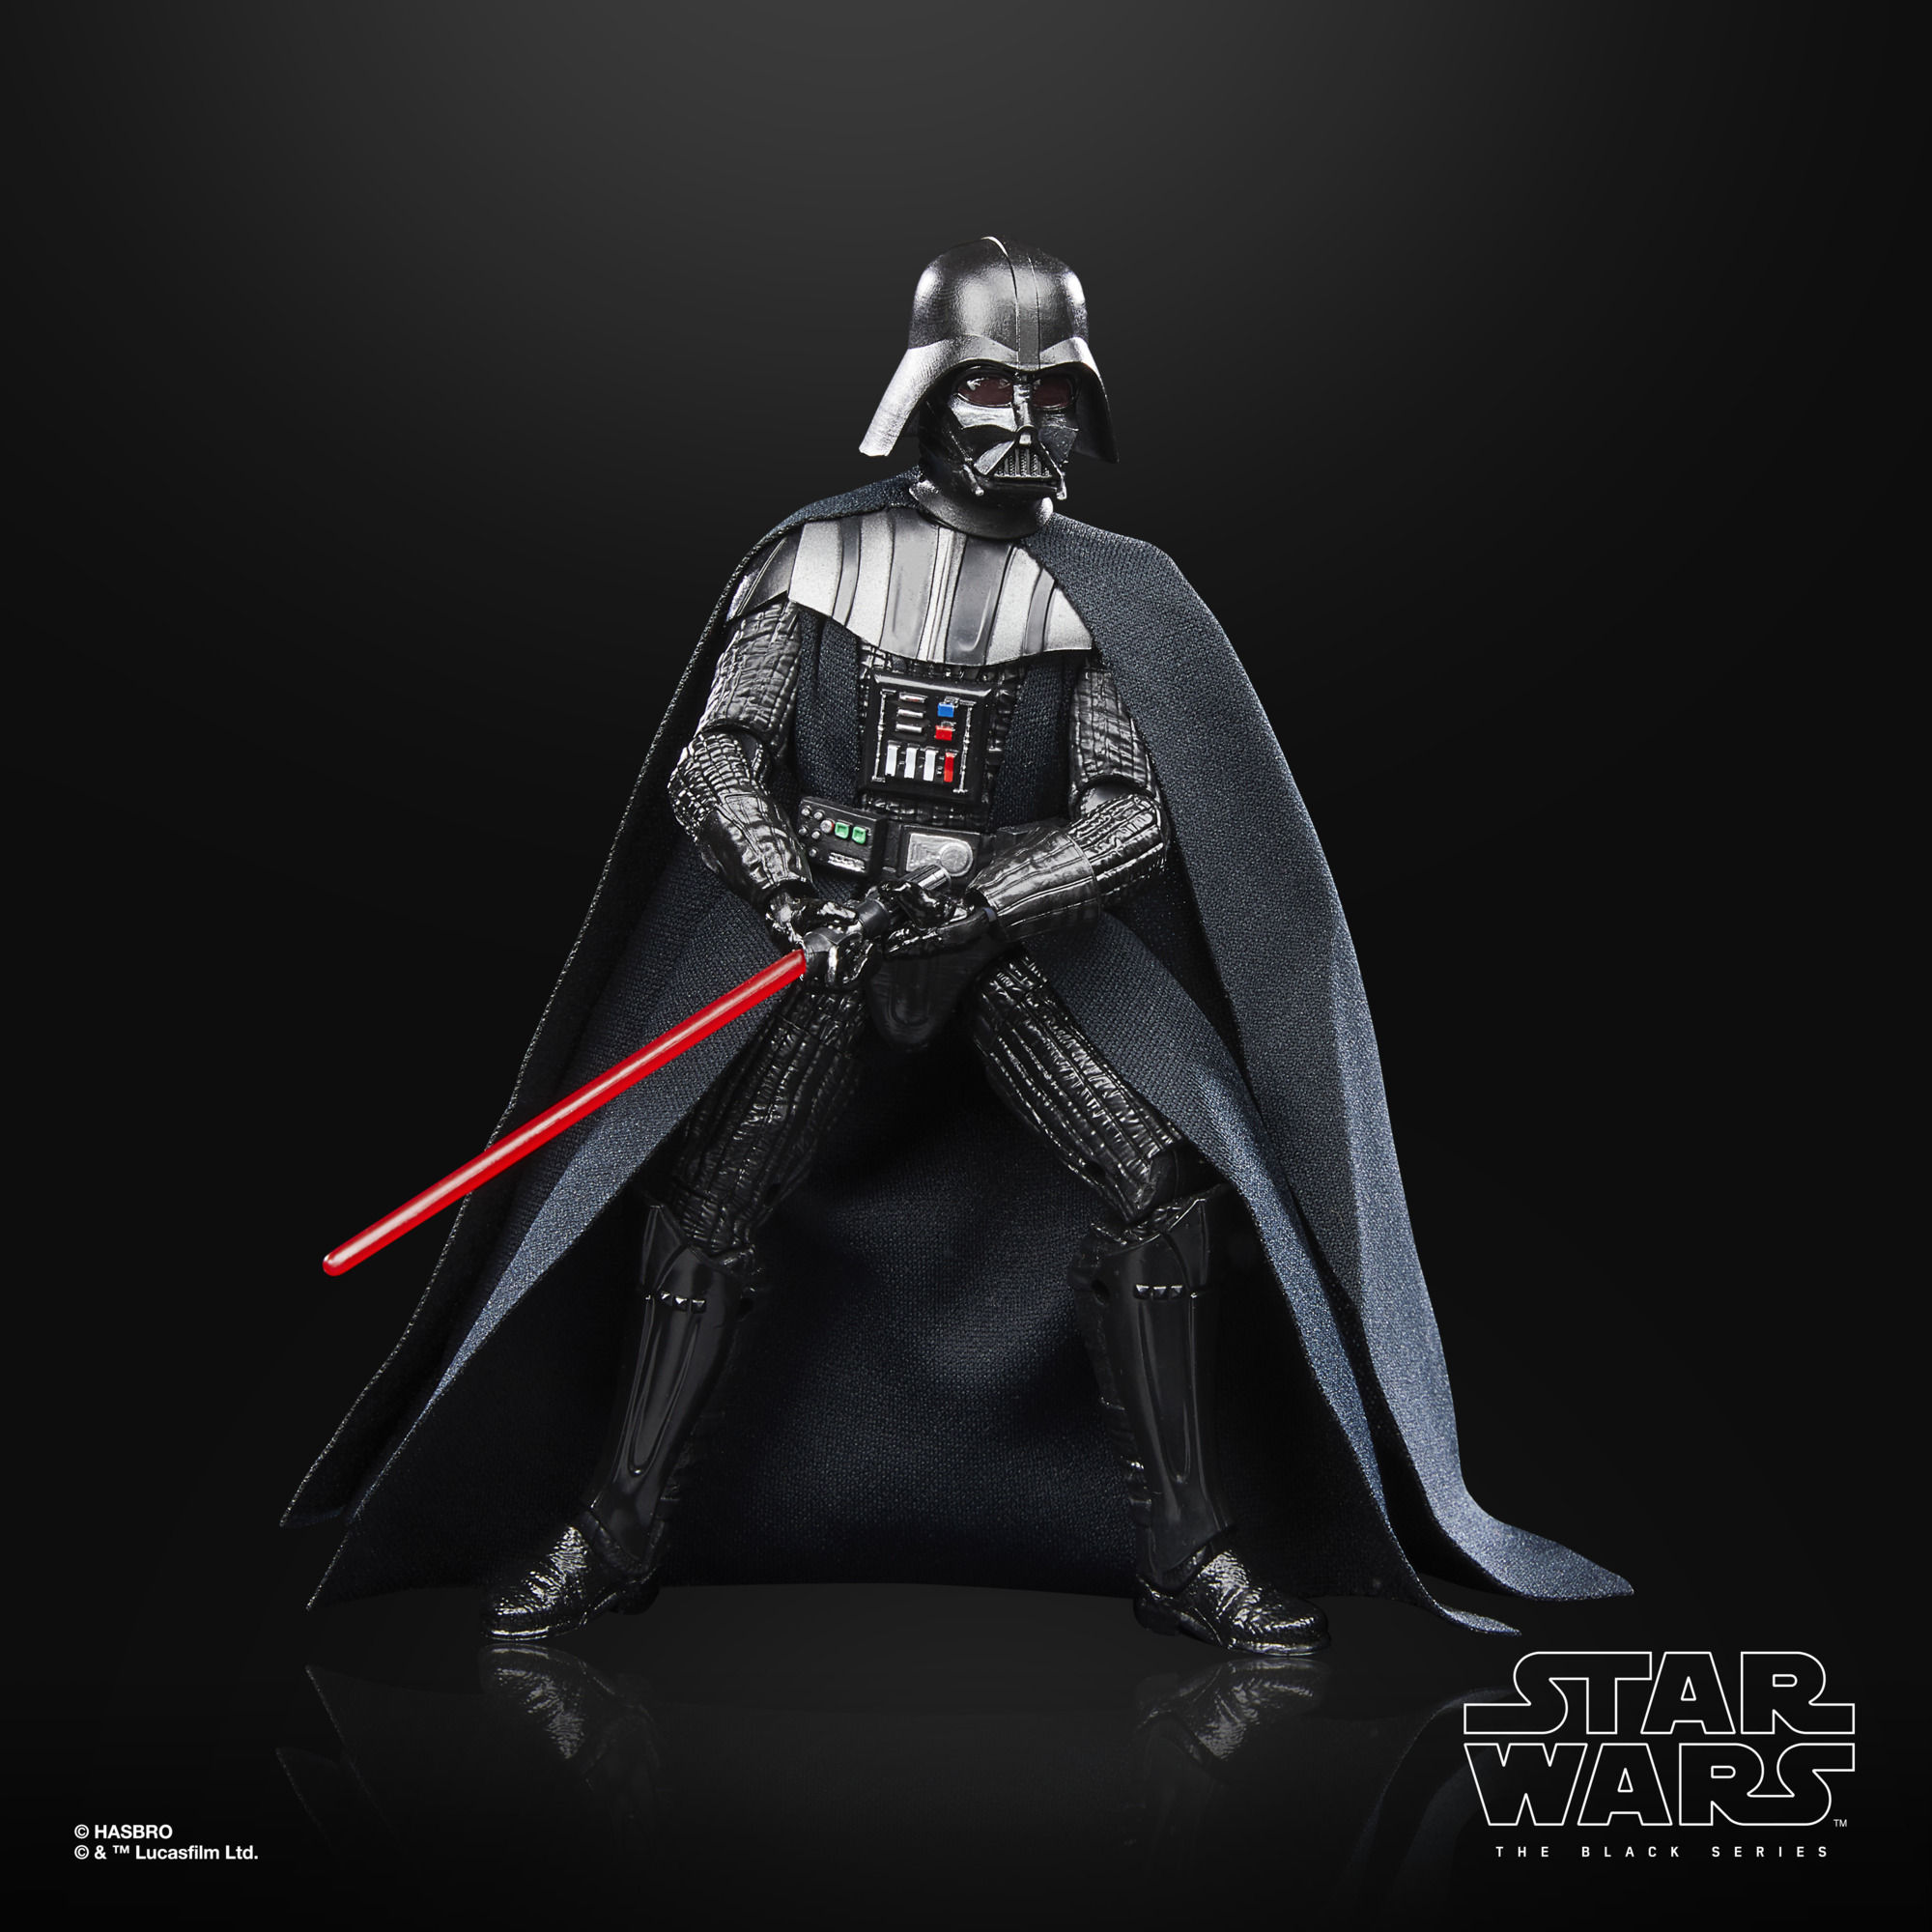 VP leicht beschädigt!!! Star Wars The Black Series 40th Anniversary Darth Vader F70825X2 5010996135773